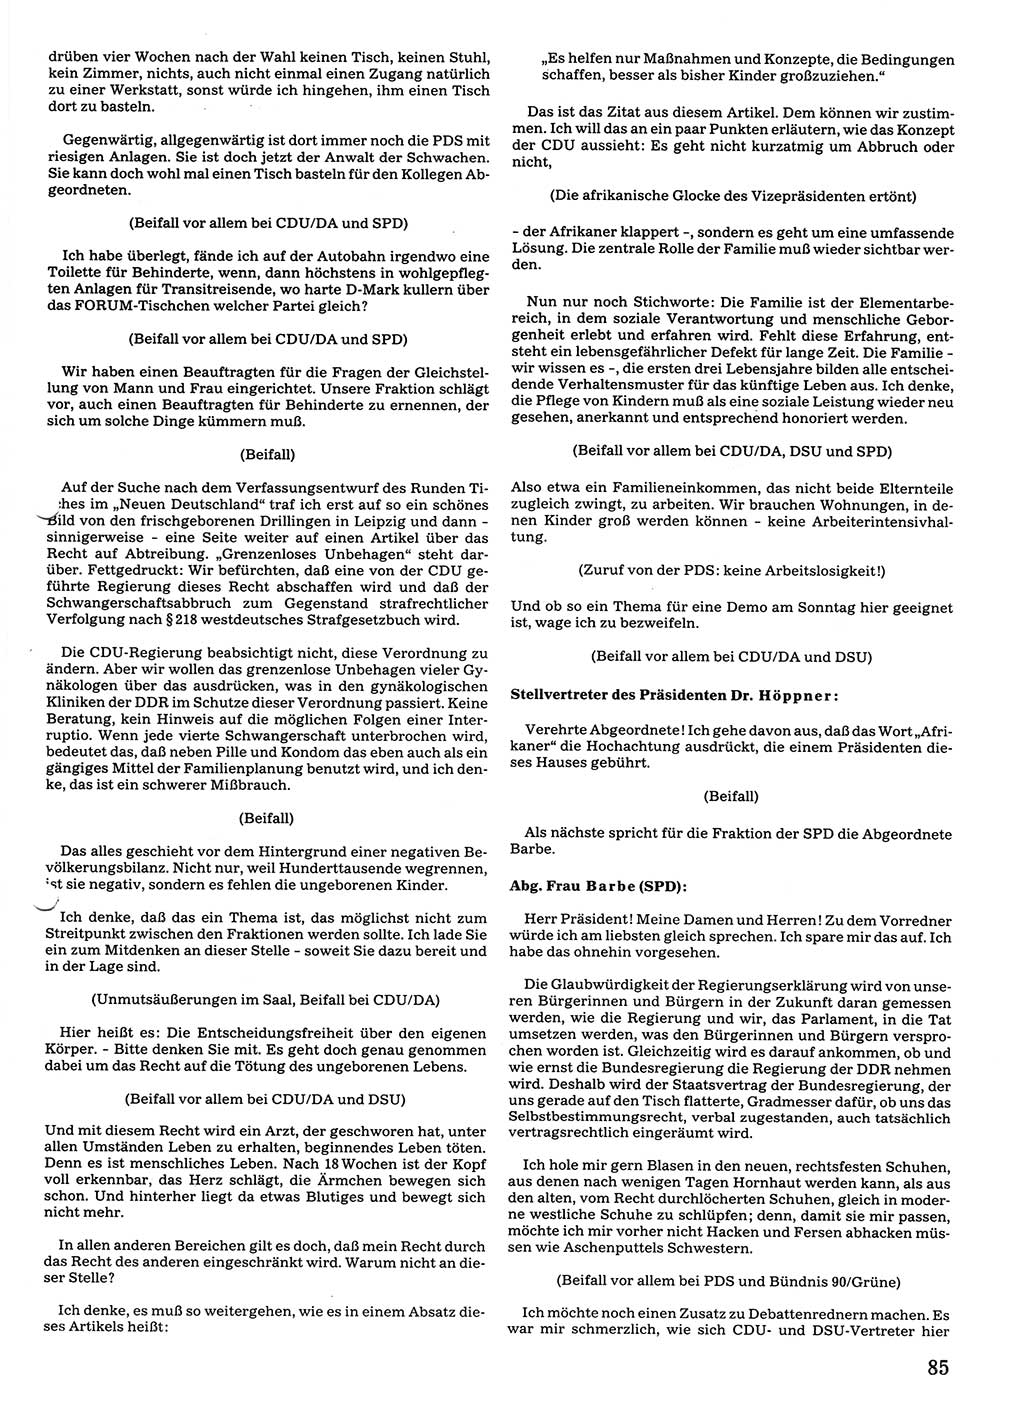 Tagungen der Volkskammer (VK) der Deutschen Demokratischen Republik (DDR), 10. Wahlperiode 1990, Seite 85 (VK. DDR 10. WP. 1990, Prot. Tg. 1-38, 5.4.-2.10.1990, S. 85)